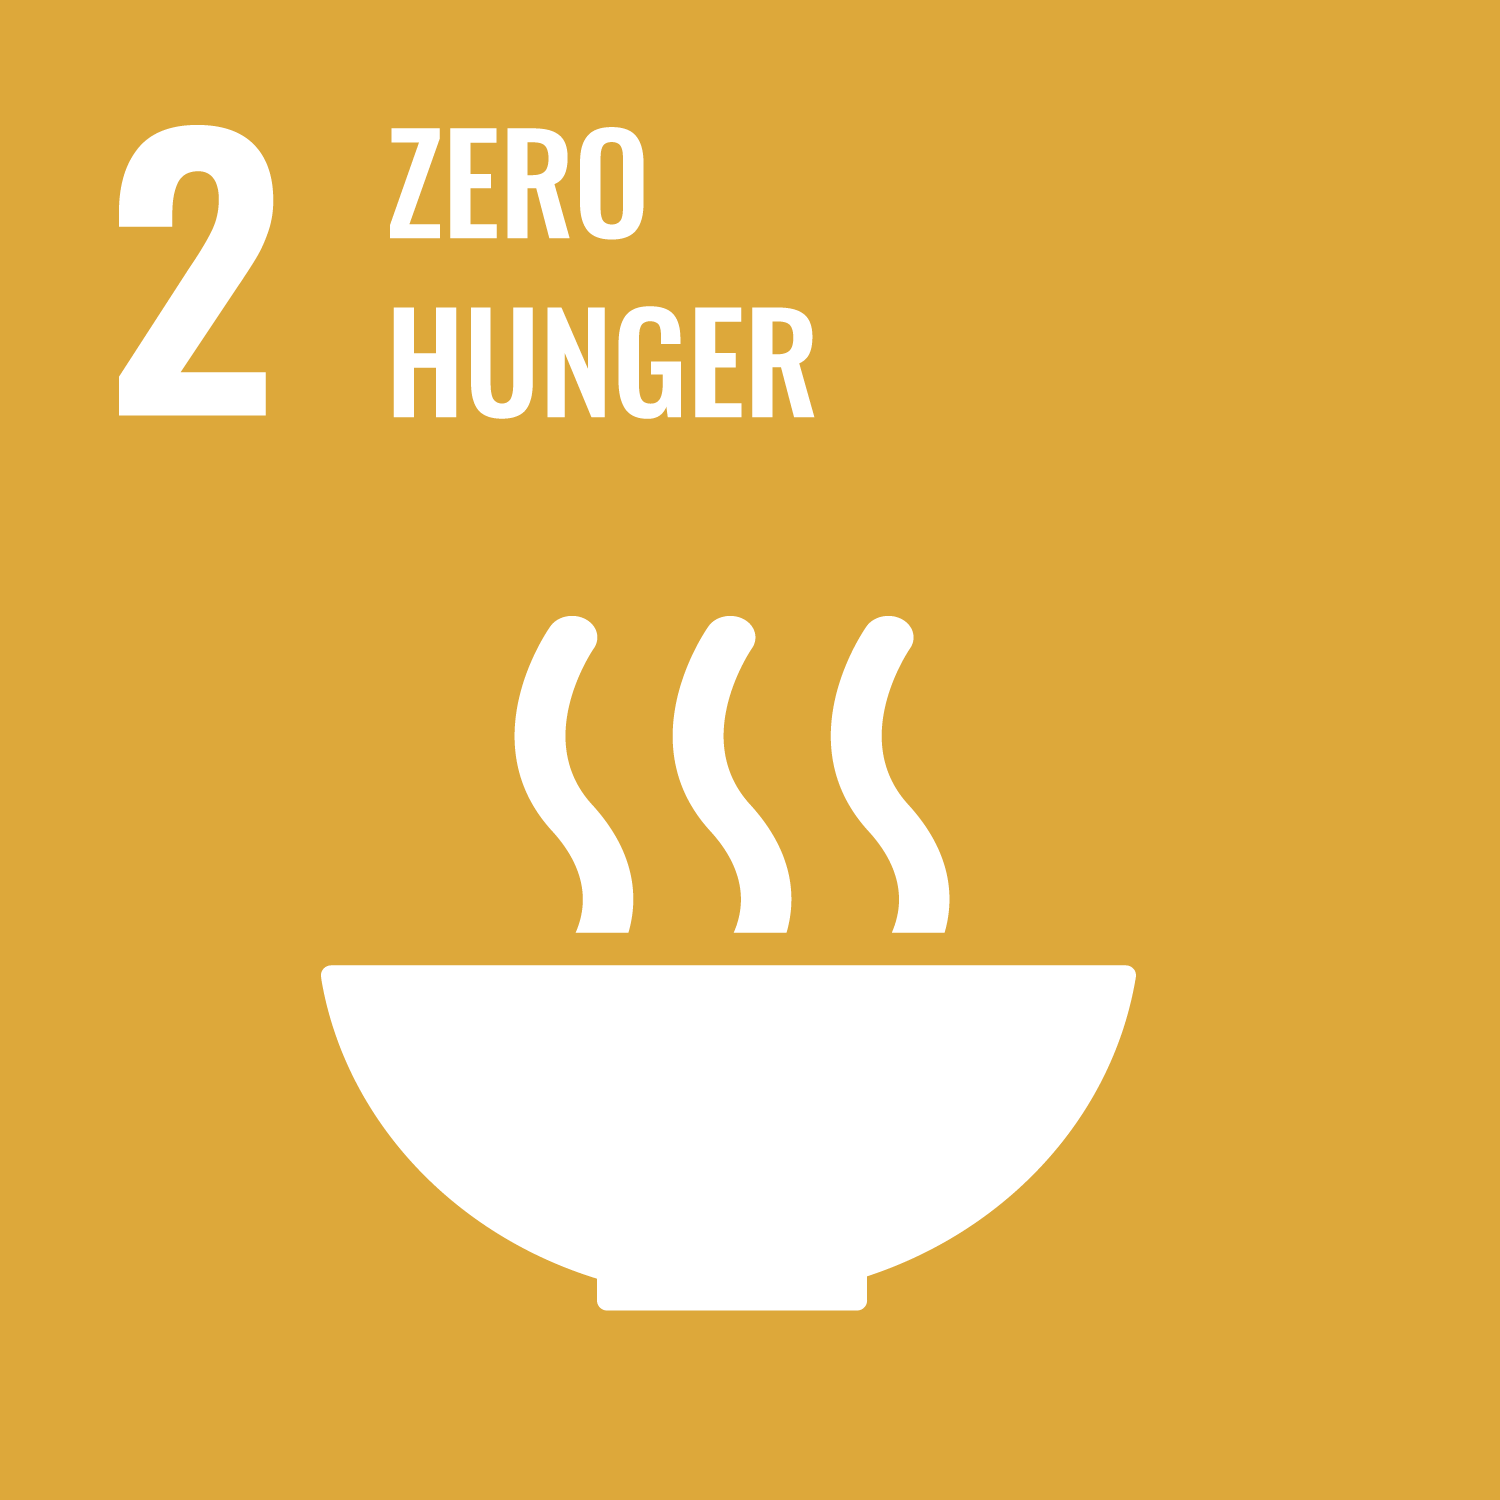 2 Zero Hunger SDG